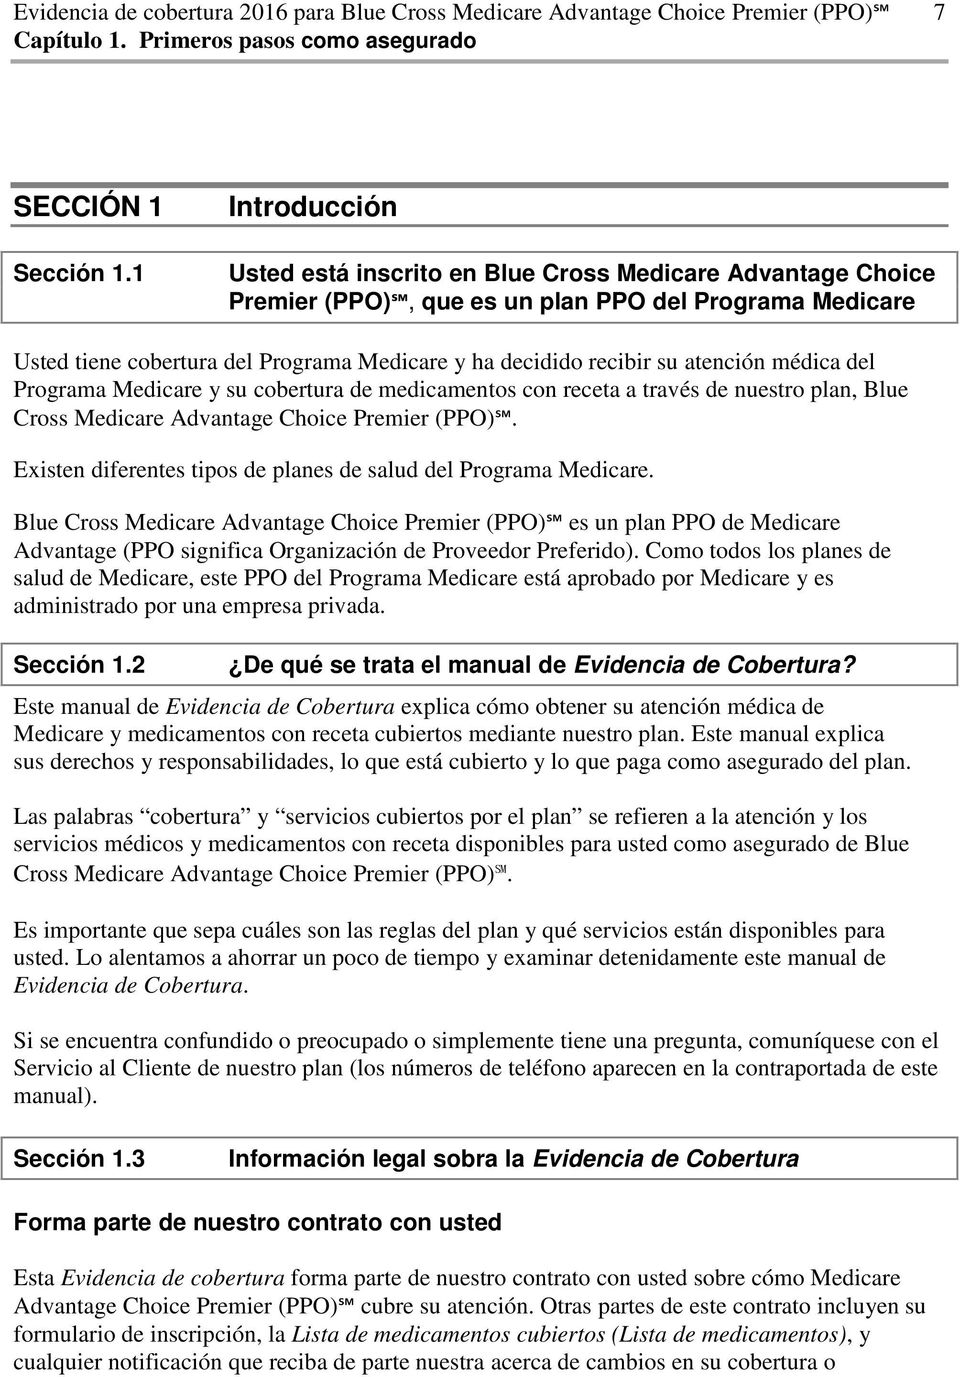 atención médica del Programa Medicare y su cobertura de medicamentos con receta a través de nuestro plan, Blue Cross Medicare Advantage Choice Premier (PPO).